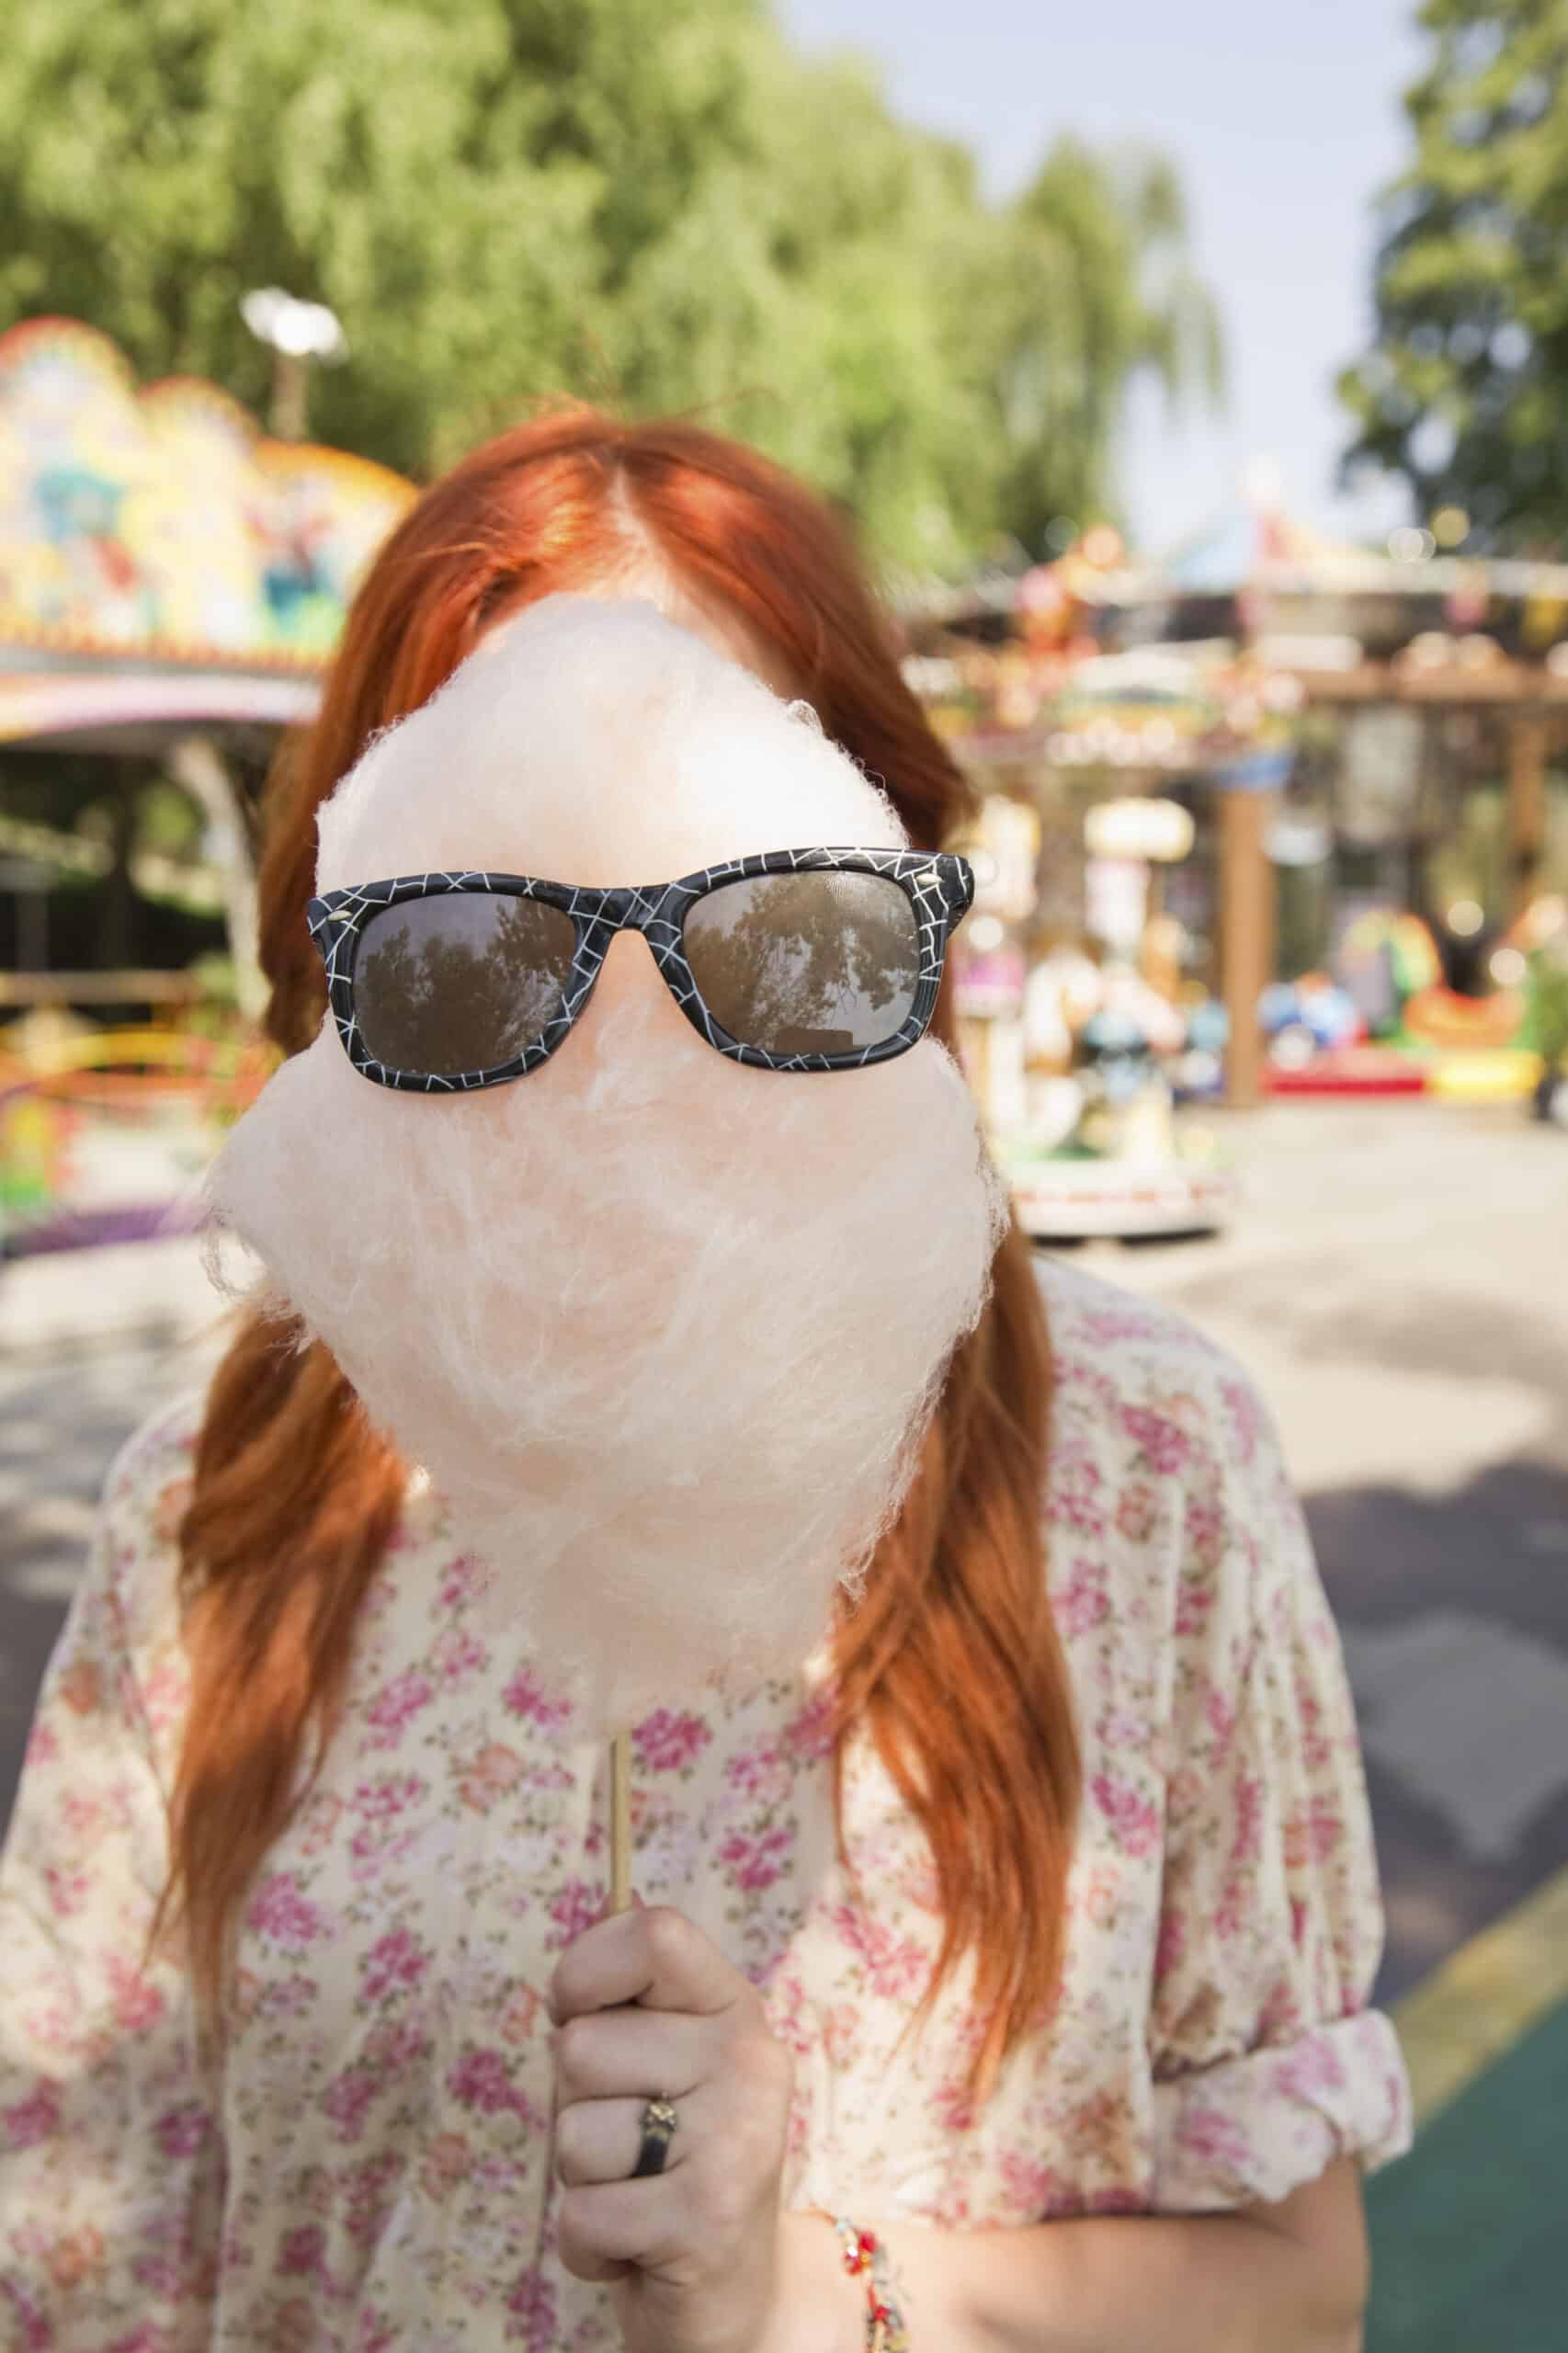 Eine Frau mit roten Haaren hält eine große Zuckerwatte mit einer Sonnenbrille darauf vor ihr Gesicht, auf einem Jahrmarkt mit Fahrgeschäften im Hintergrund. © Fotografie Tomas Rodriguez